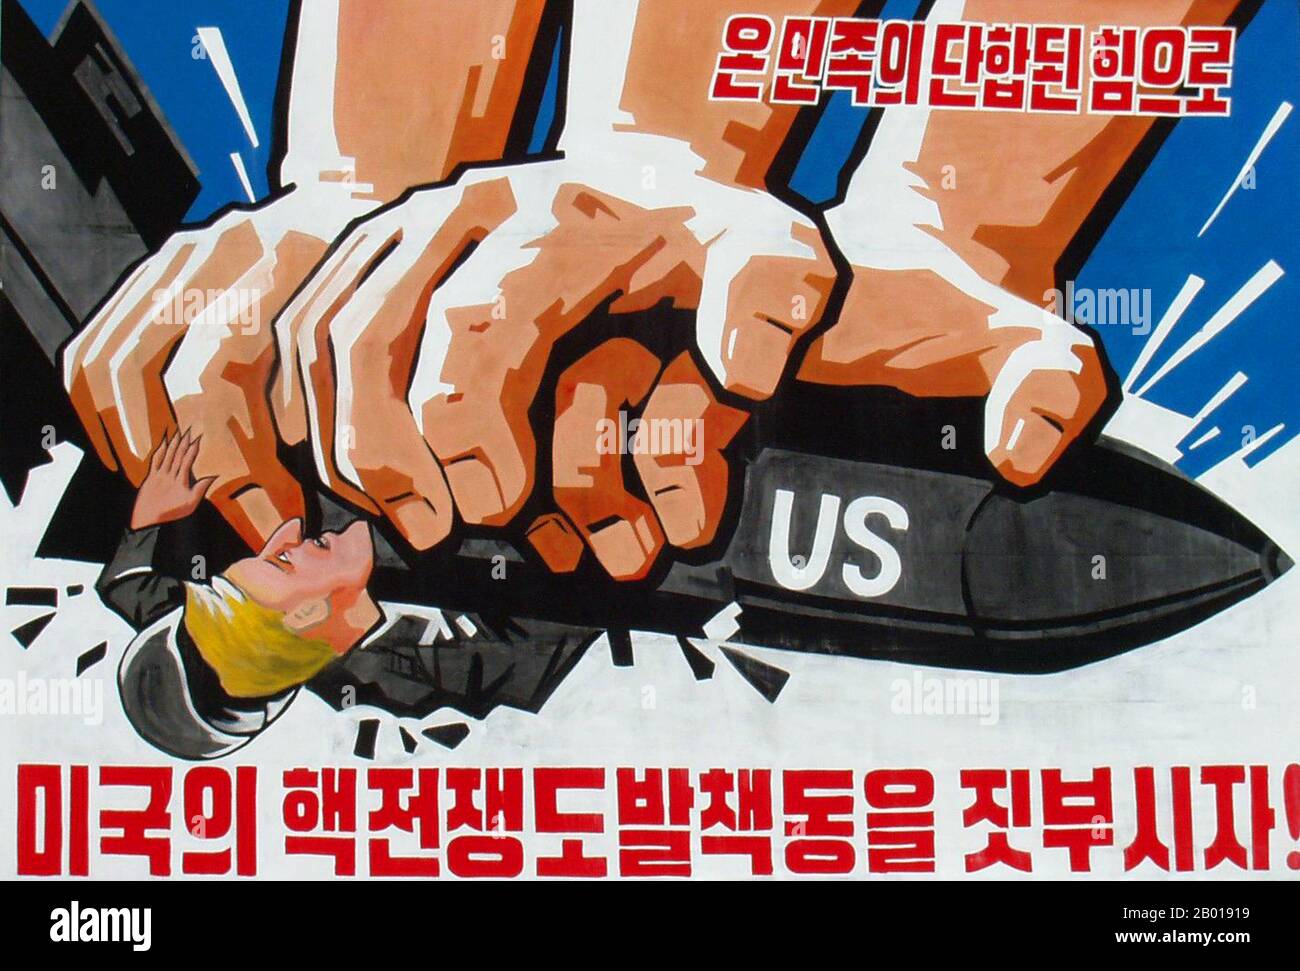 Corée : l'affiche de propagande de la Corée du Nord (RPDC) montre des mains puissantes écrasant un militaire USA, c. 1950s. Le réalisme socialiste est un style d'art réaliste qui s'est développé sous le socialisme en Union soviétique et est devenu un style dominant dans d'autres pays communistes. Le réalisme socialiste est un style téléologique ayant pour objectif la poursuite des objectifs du socialisme et du communisme. Bien qu'elle soit liée, elle ne doit pas être confondue avec le réalisme social, un type d'art qui dépeint de façon réaliste des sujets de préoccupation sociale. Banque D'Images